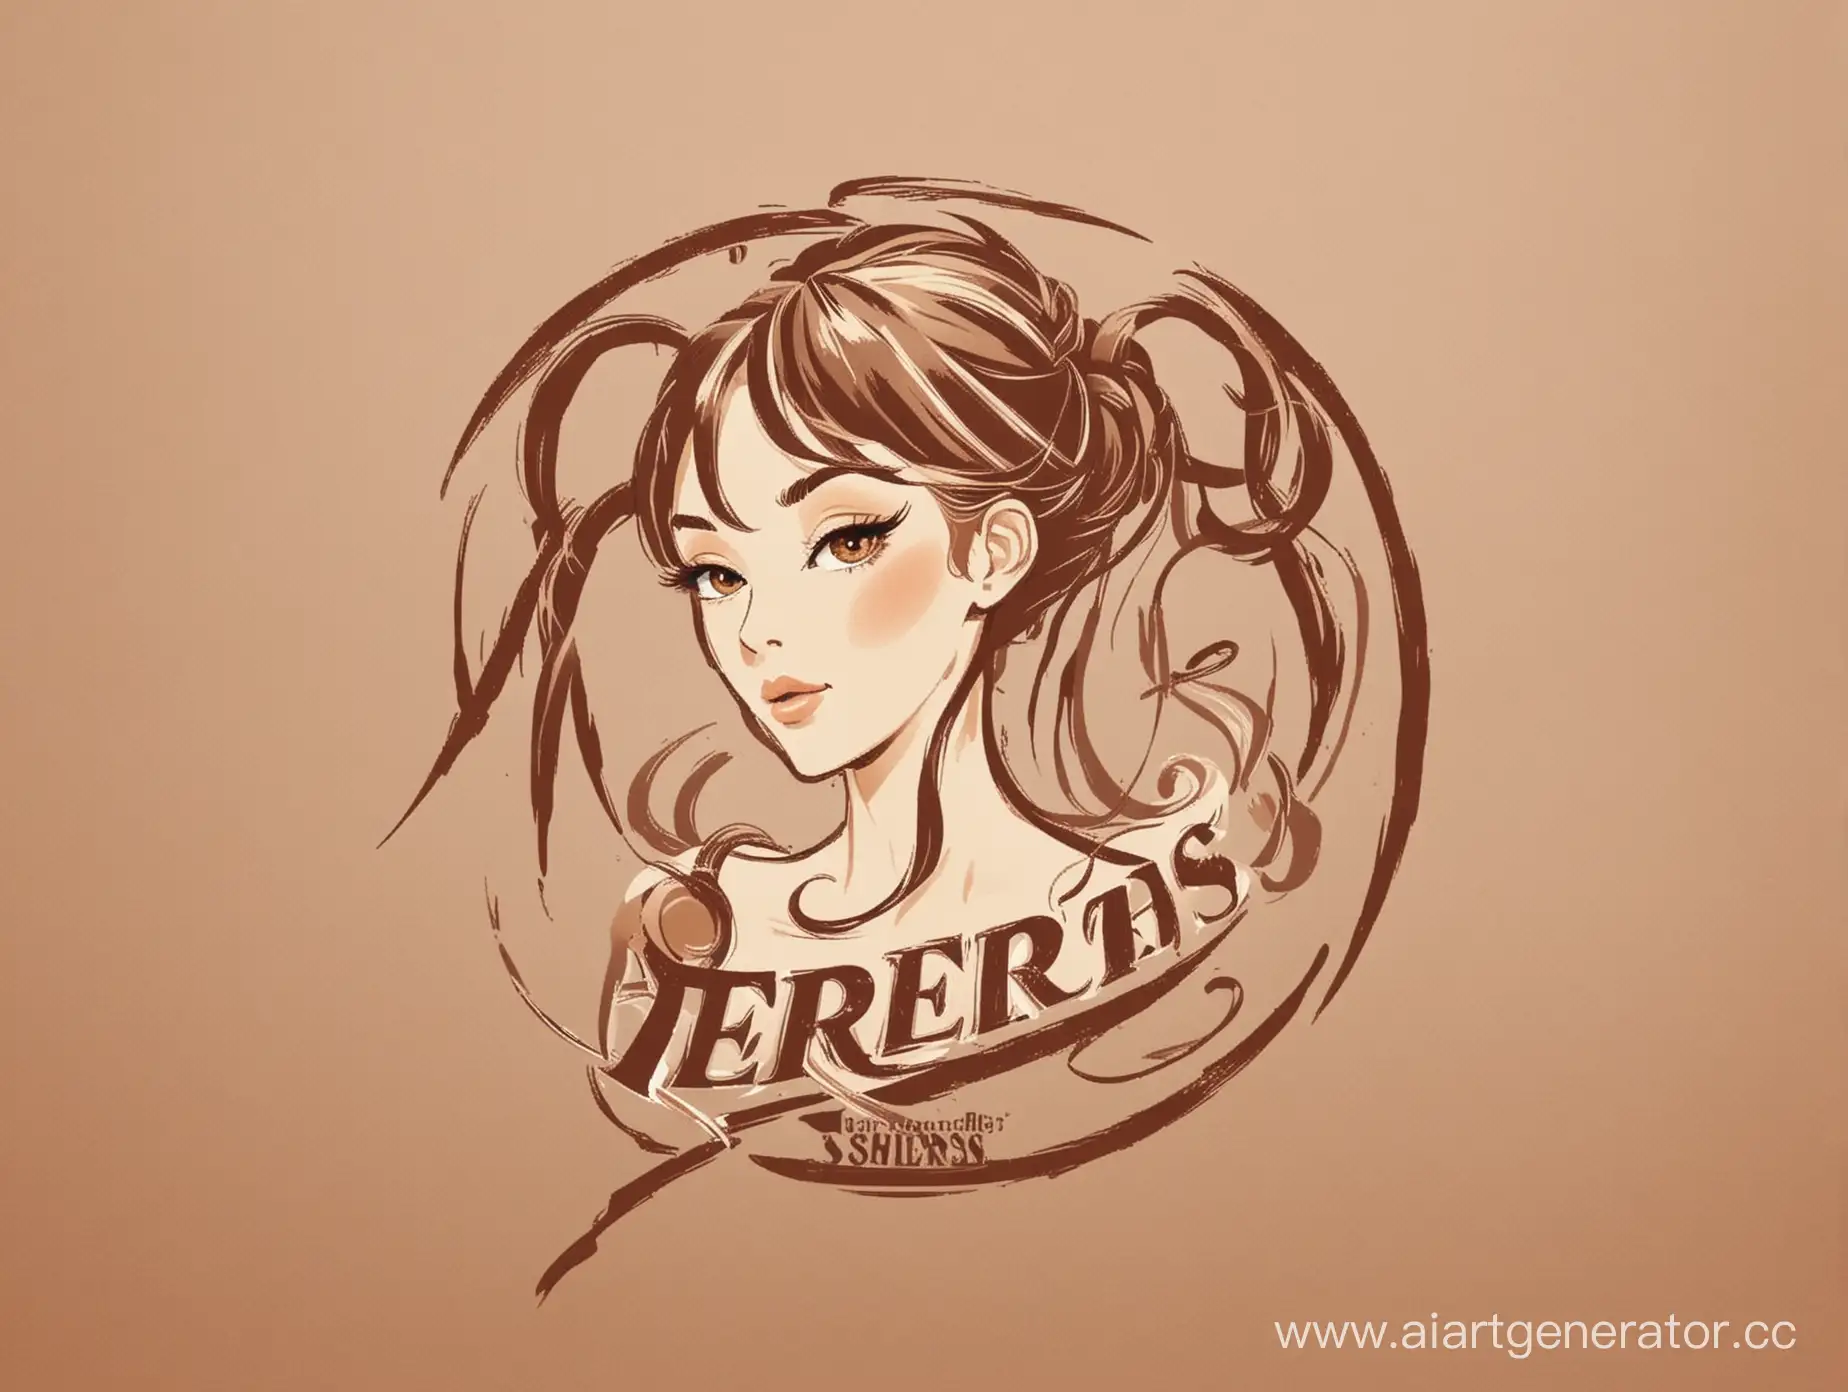 логотип - ириски, шоколадный, ,бежевый, женская голова, прическа, ножницы парикмахера